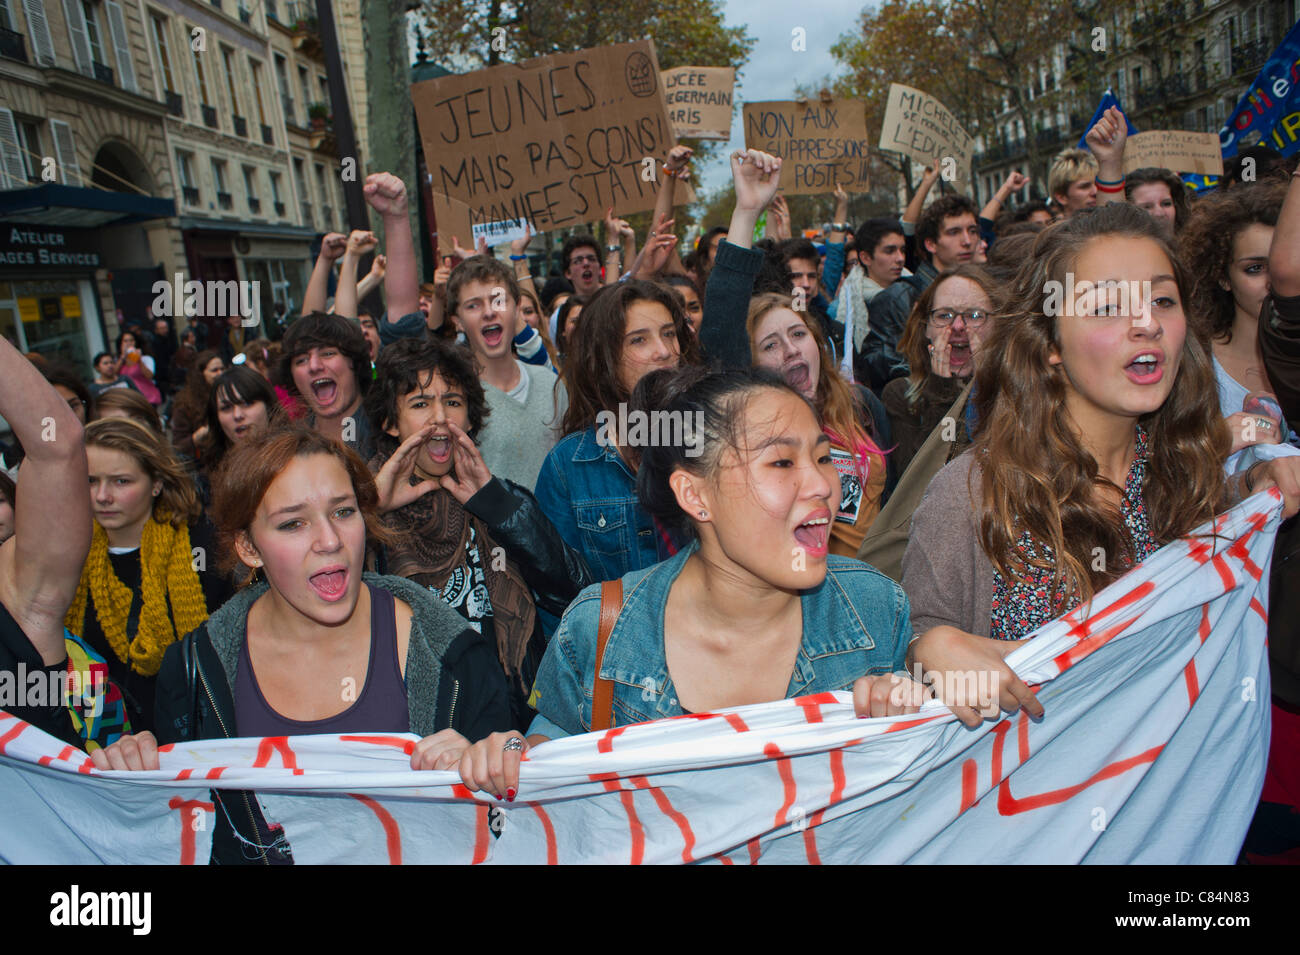 Gli studenti francesi marciano per protestare contro le misure di austerità del governo che riguardano anche l'istruzione. Parigi, grande folla di persone [adolescenti] raduno di donne, FRANCIA DEMO GIOVANILE, protesta adolescenziale Foto Stock